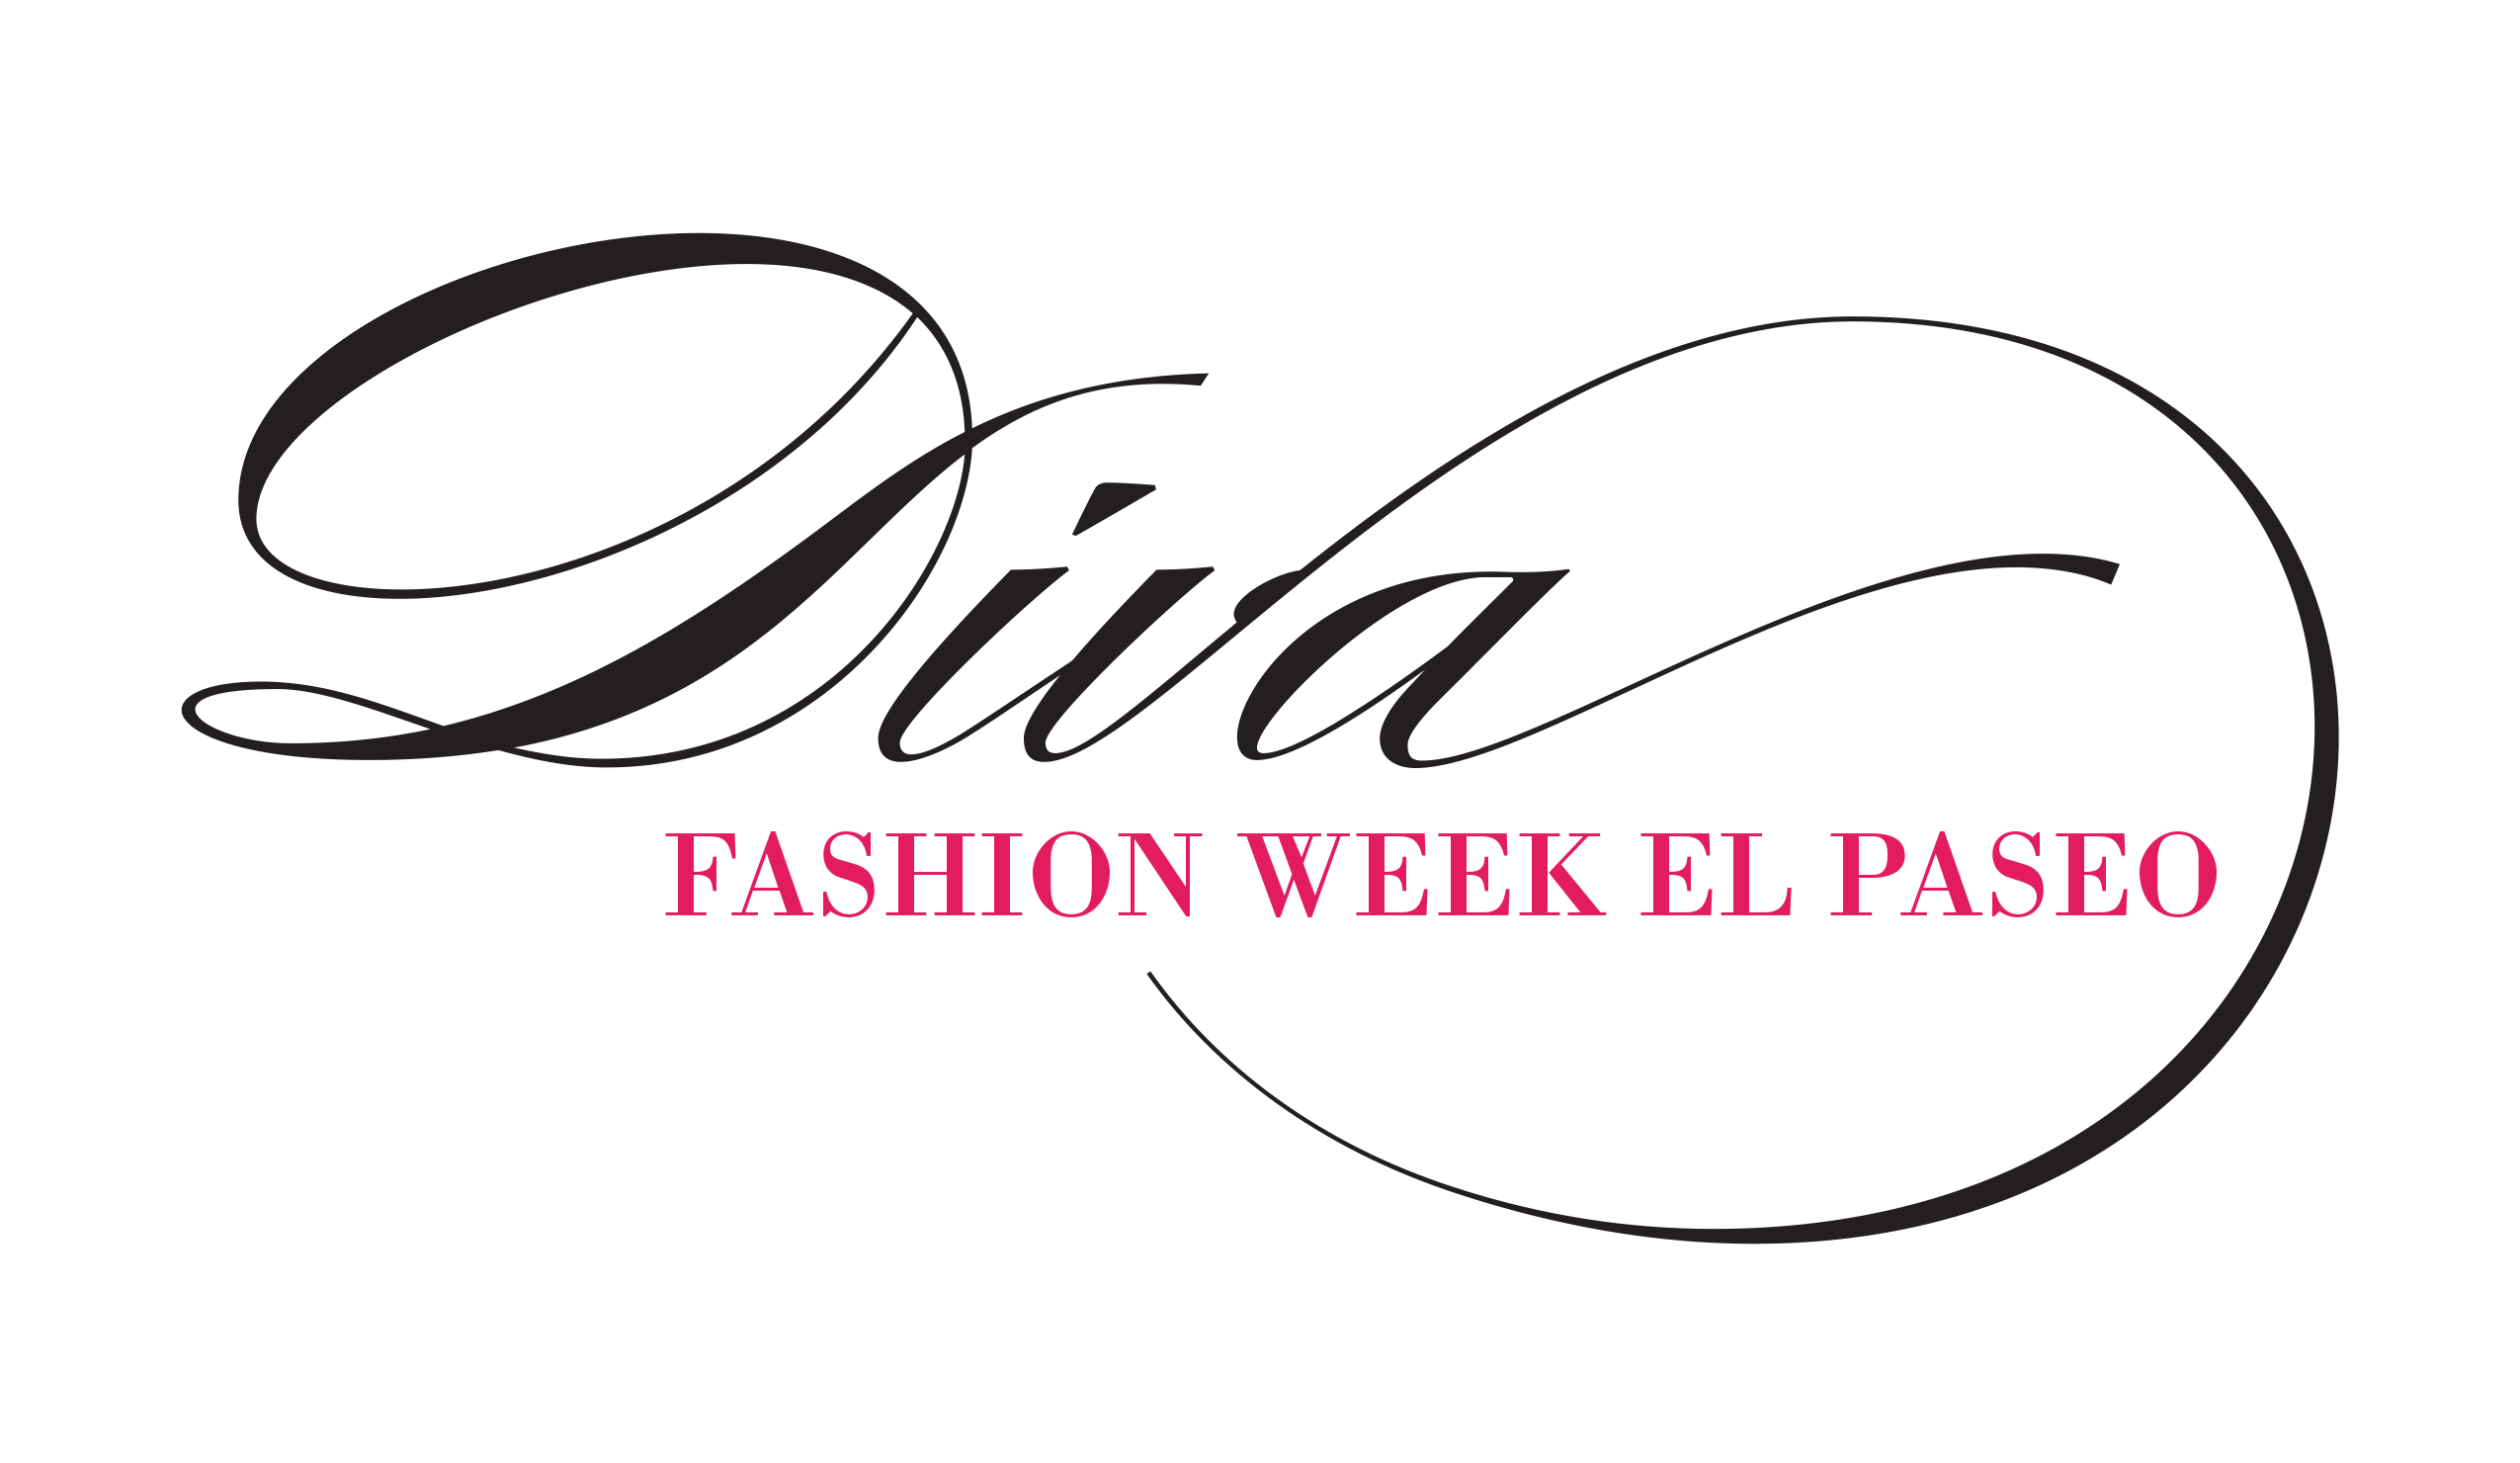 Diva Logo - fashion week el paseo diva logo | Beguiled by Design